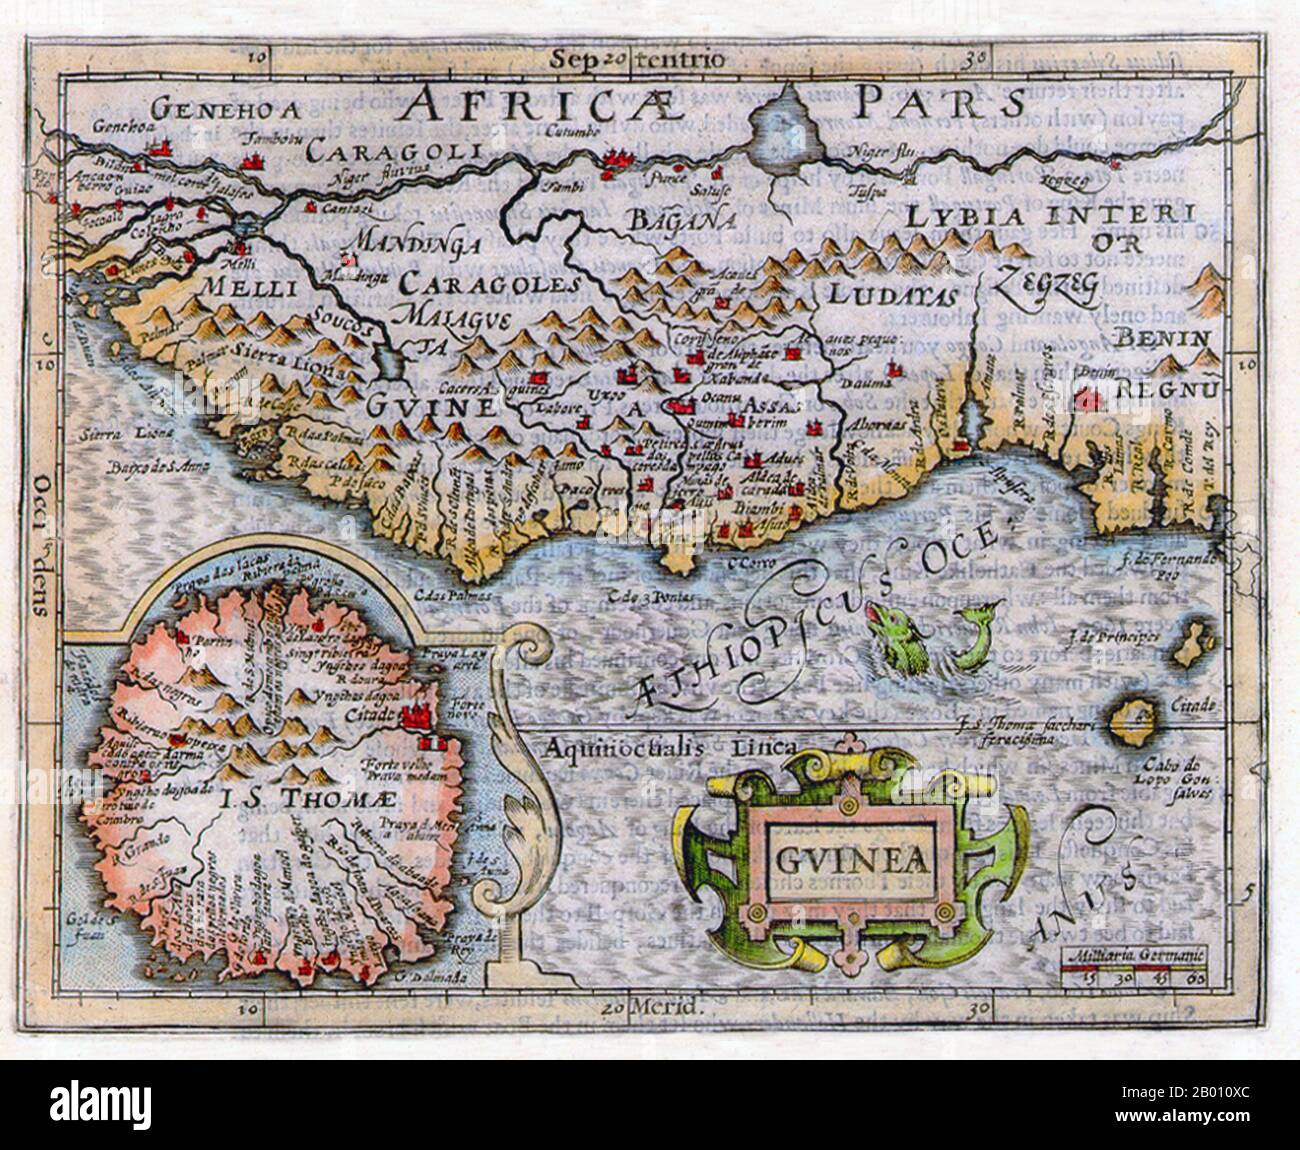 Afrika: Karte von Guinea und Umgebung von Jodocus Hondius (1563-1612), 1625. 'Benin Regnu', das Königreich Benin, ist im Südosten angegeben. Stockfoto